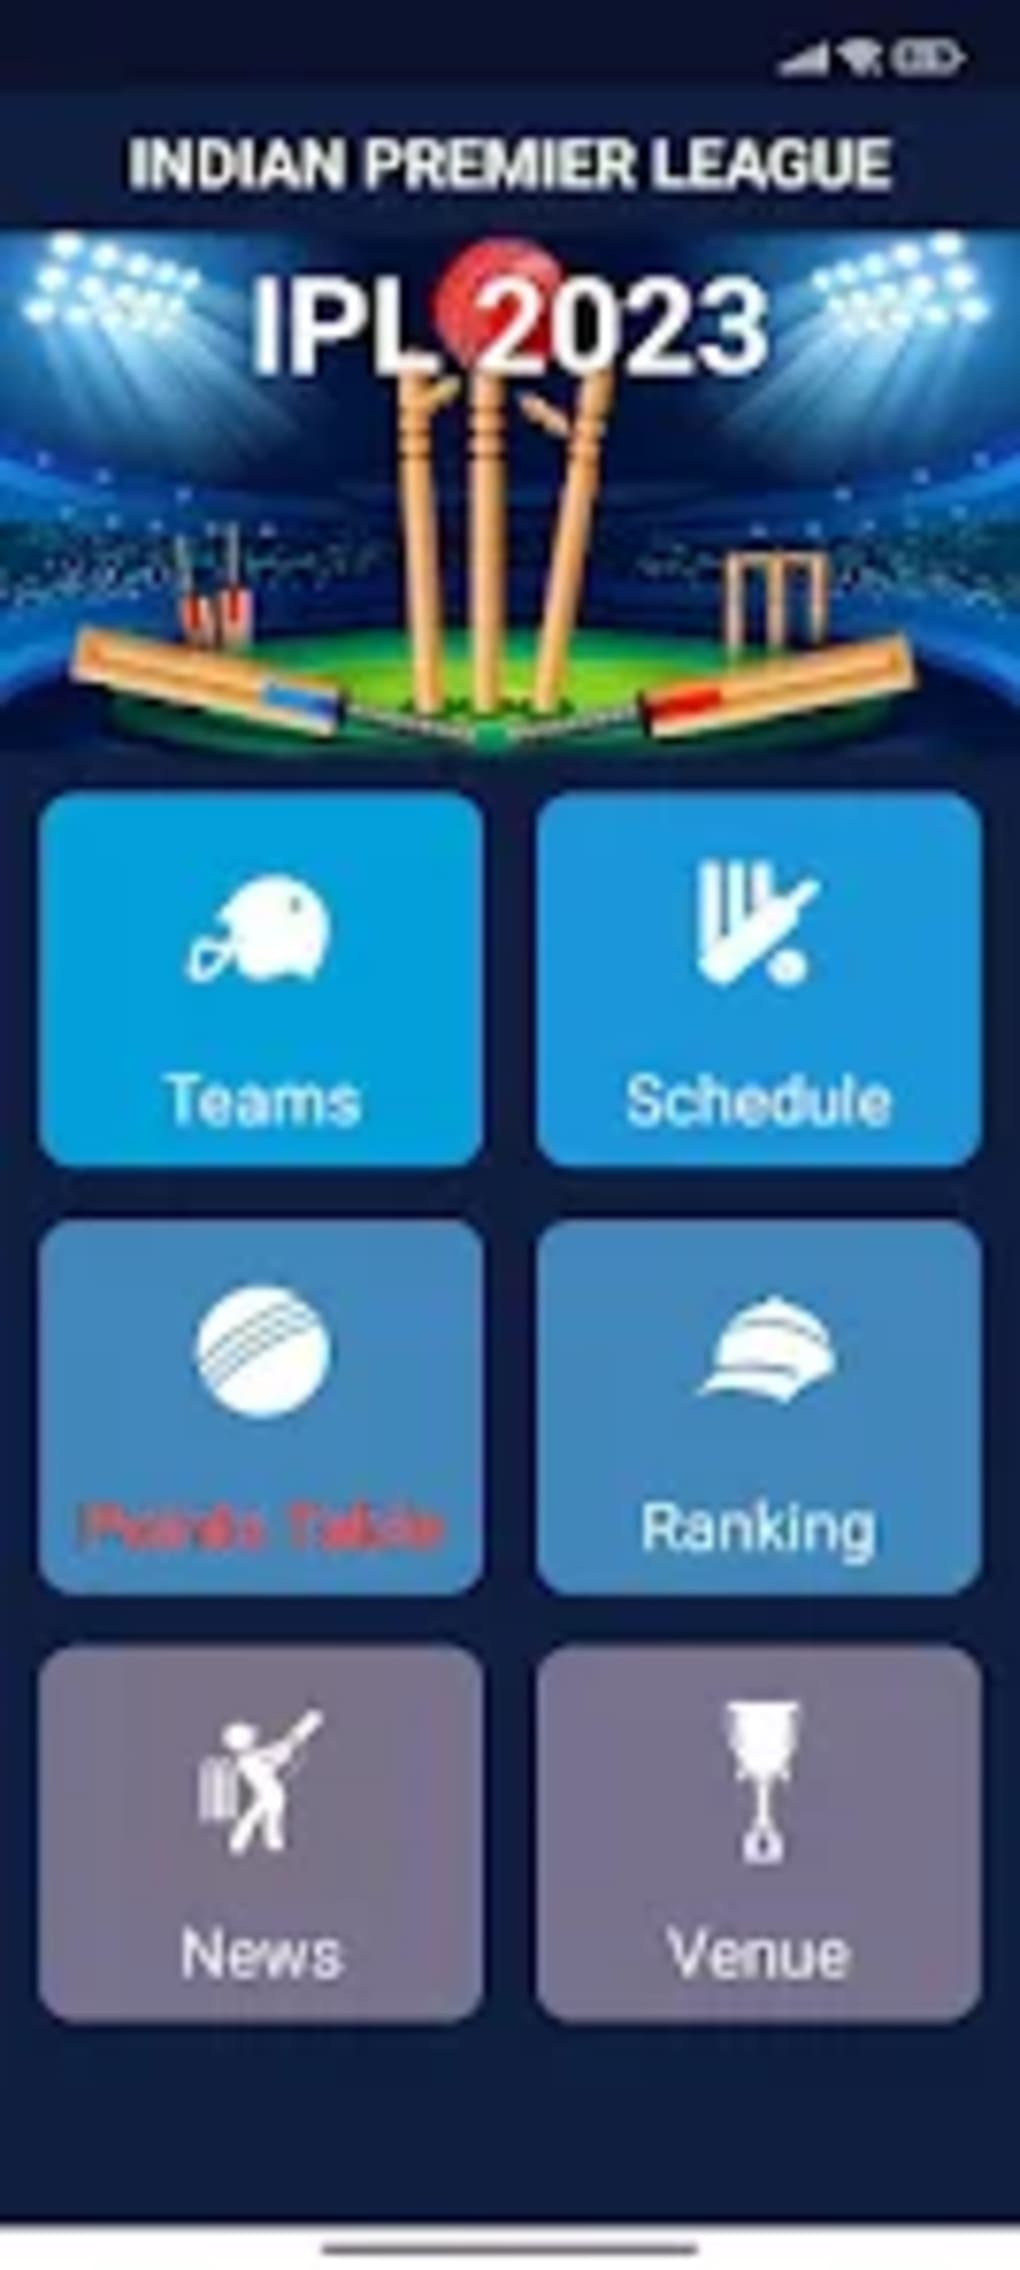 TATA IPL 2023 Live Score Pro Android 版 下载